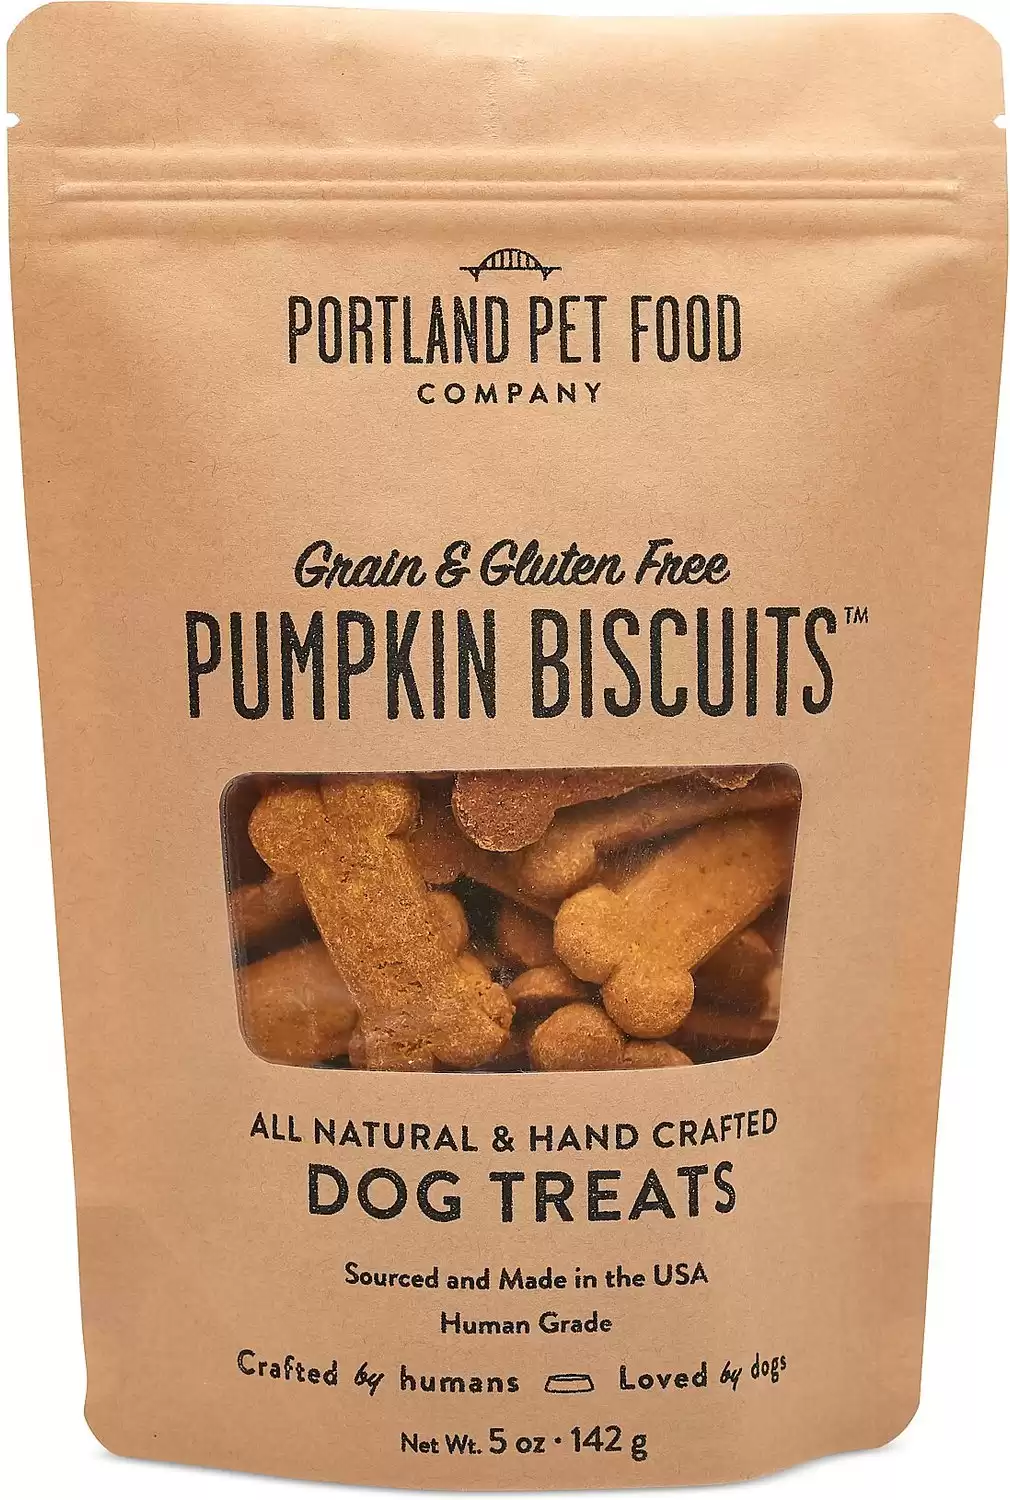 Portland Pet Food Company Pumpkin Biscuits